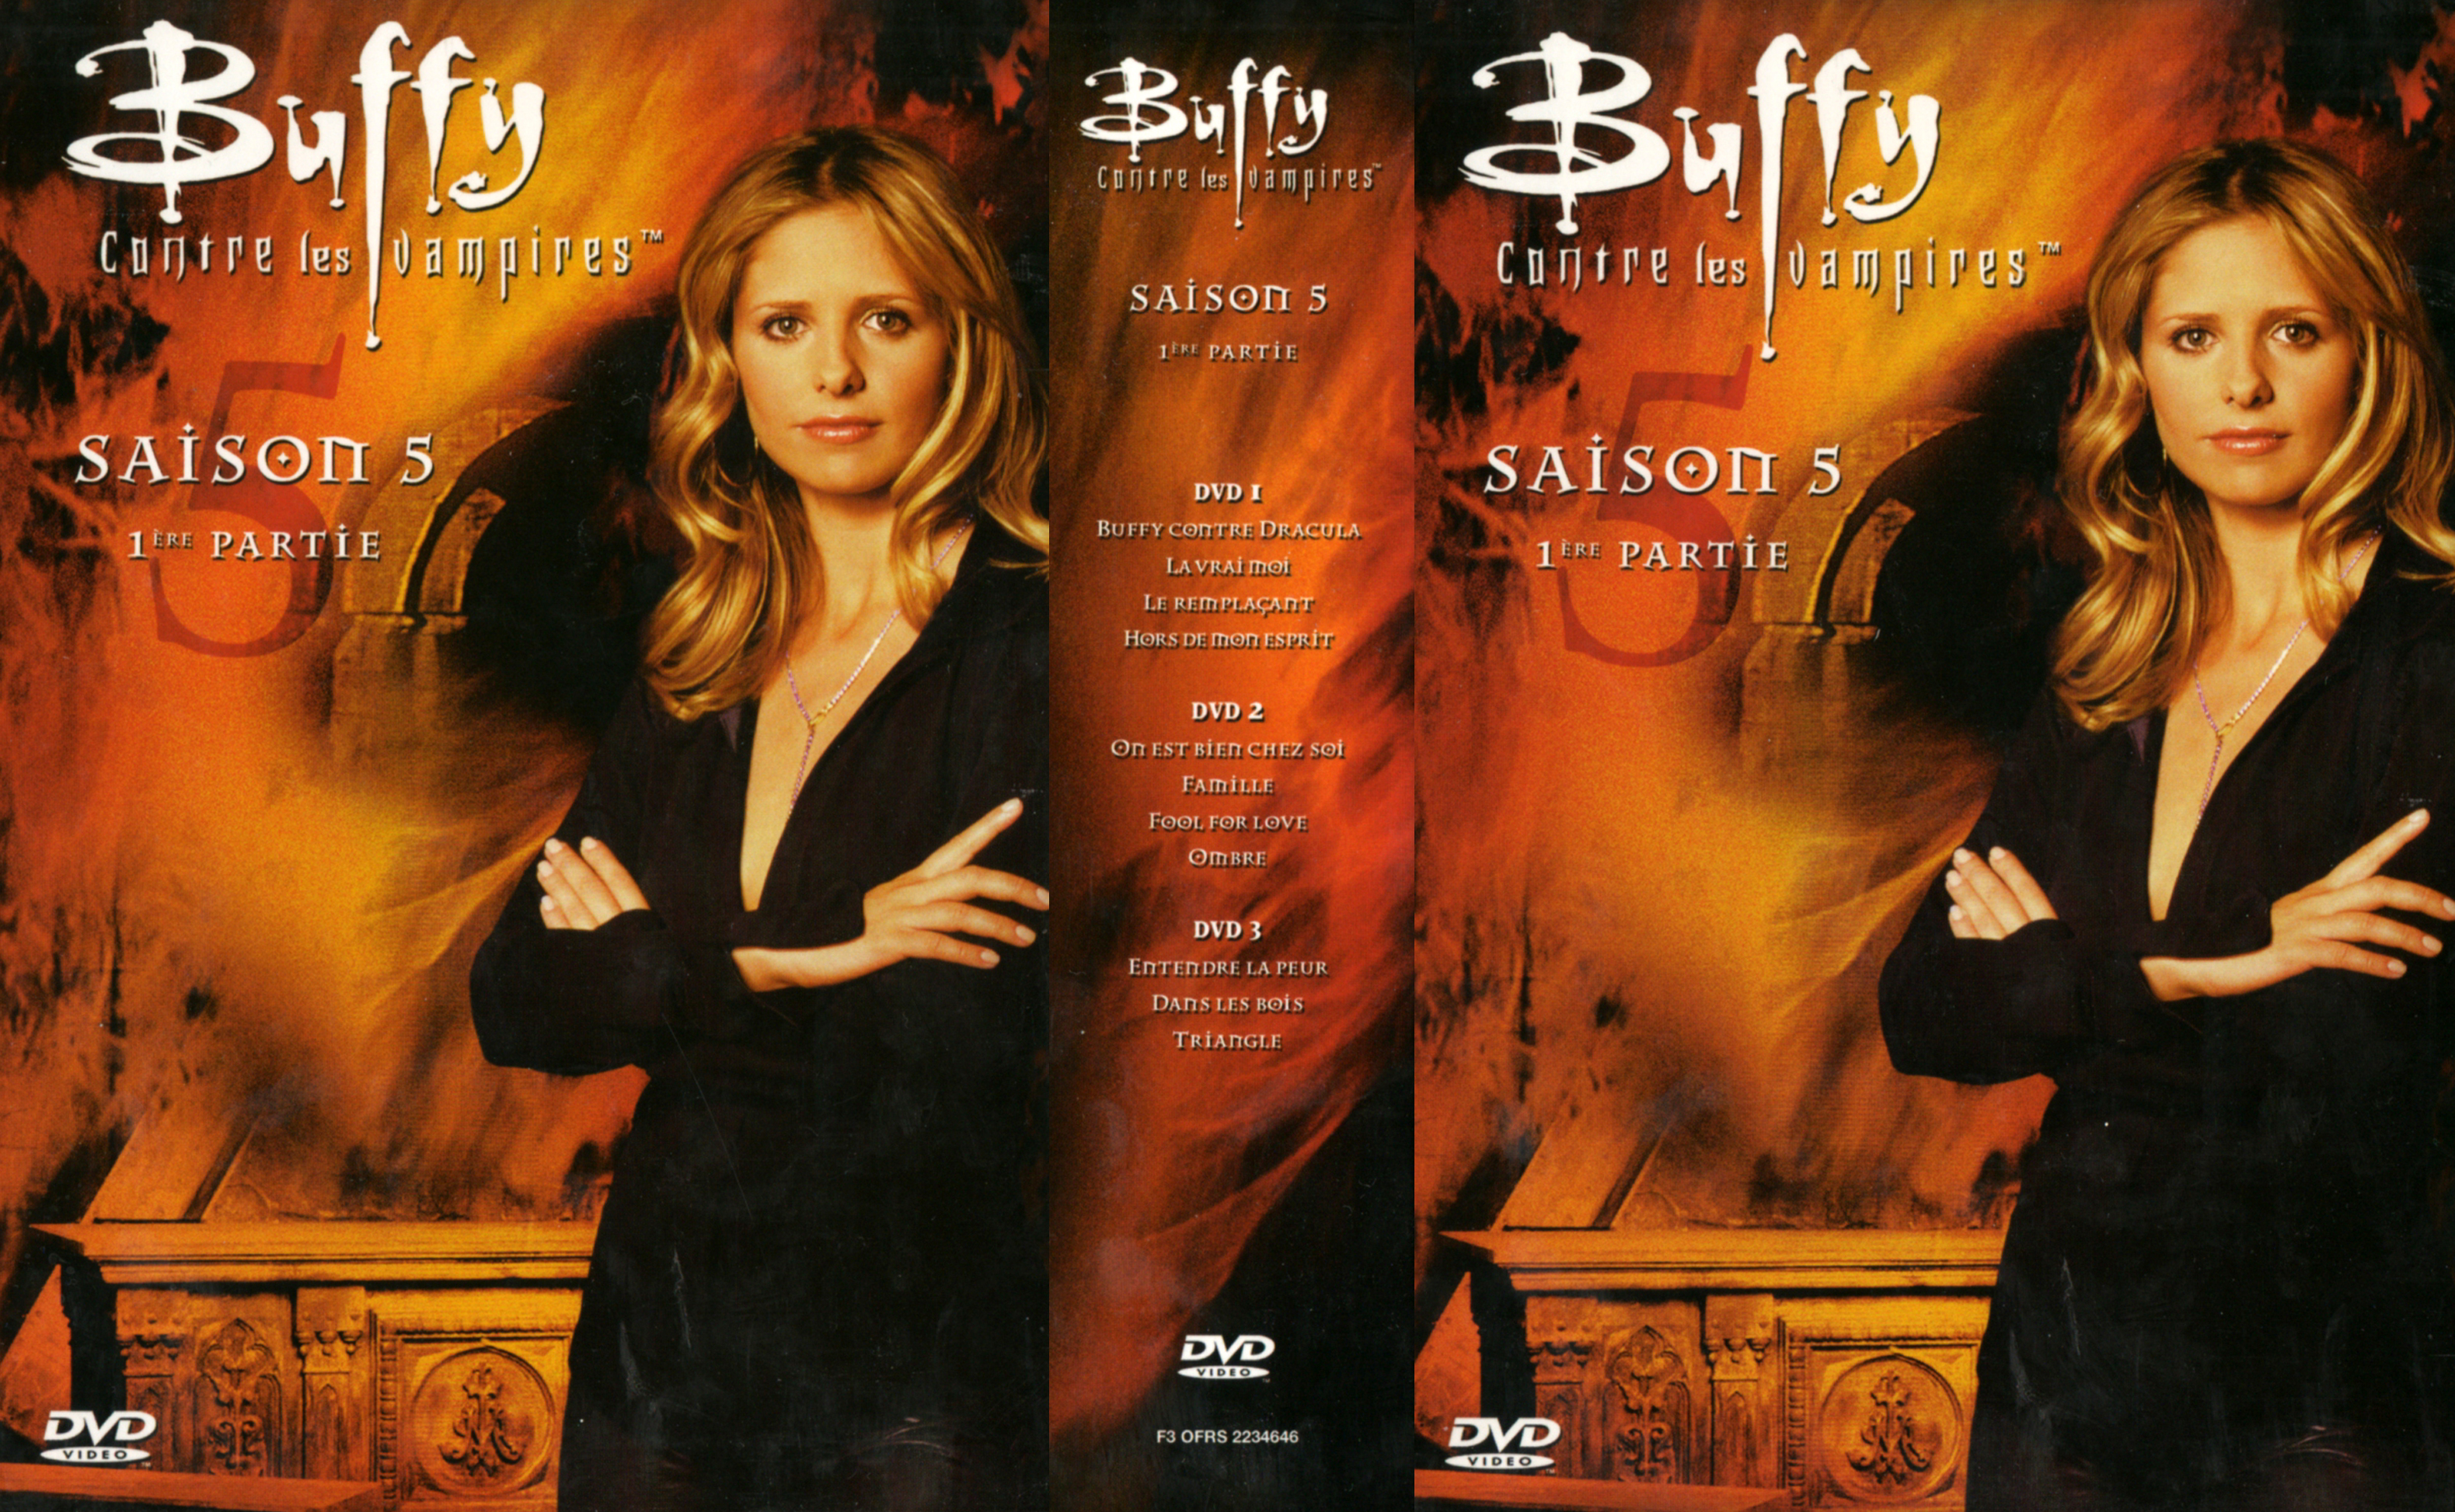 Jaquette DVD Buffy contre les vampires Saison 5 vol 1 COFFRET